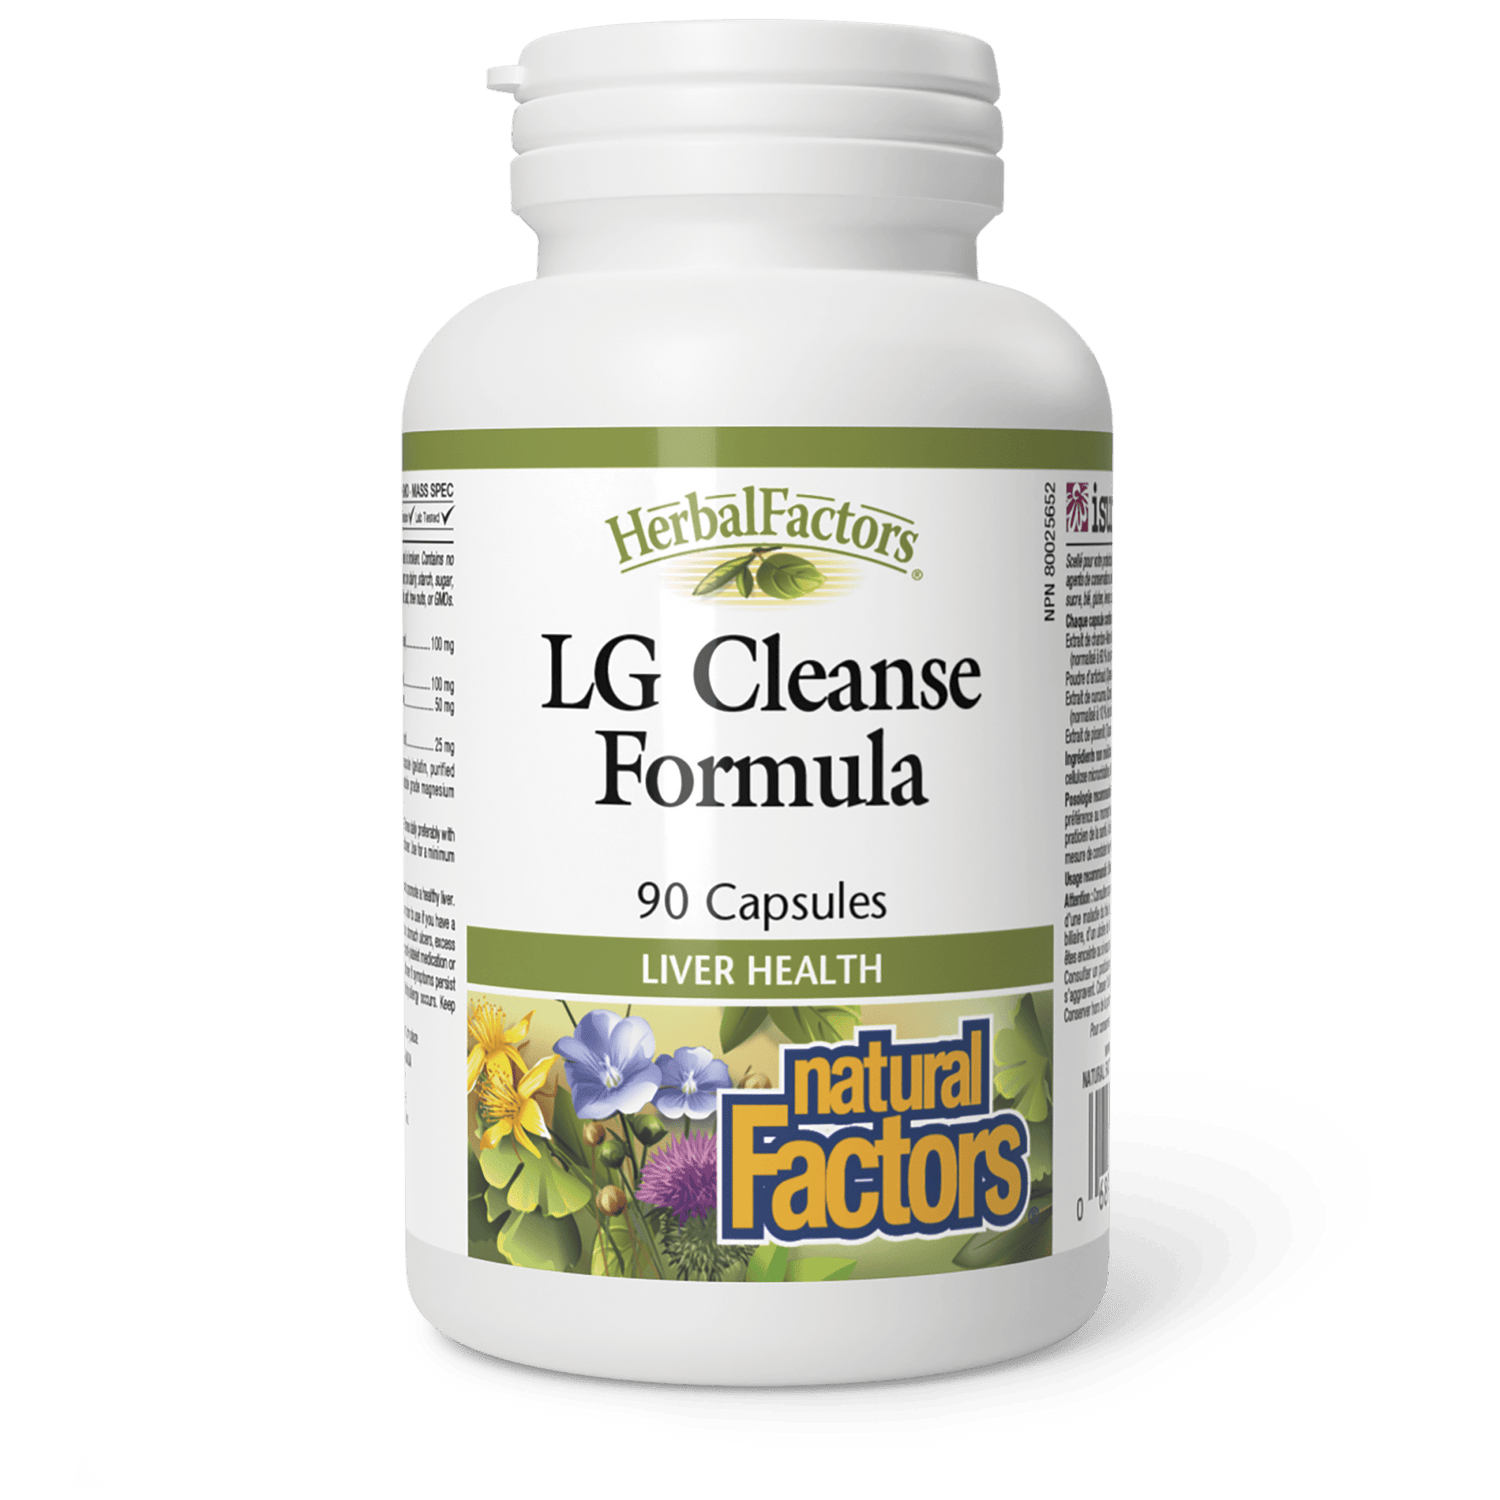 LG Cleanse Formula, HerbalFactors, Natural Factors|v|image|4645